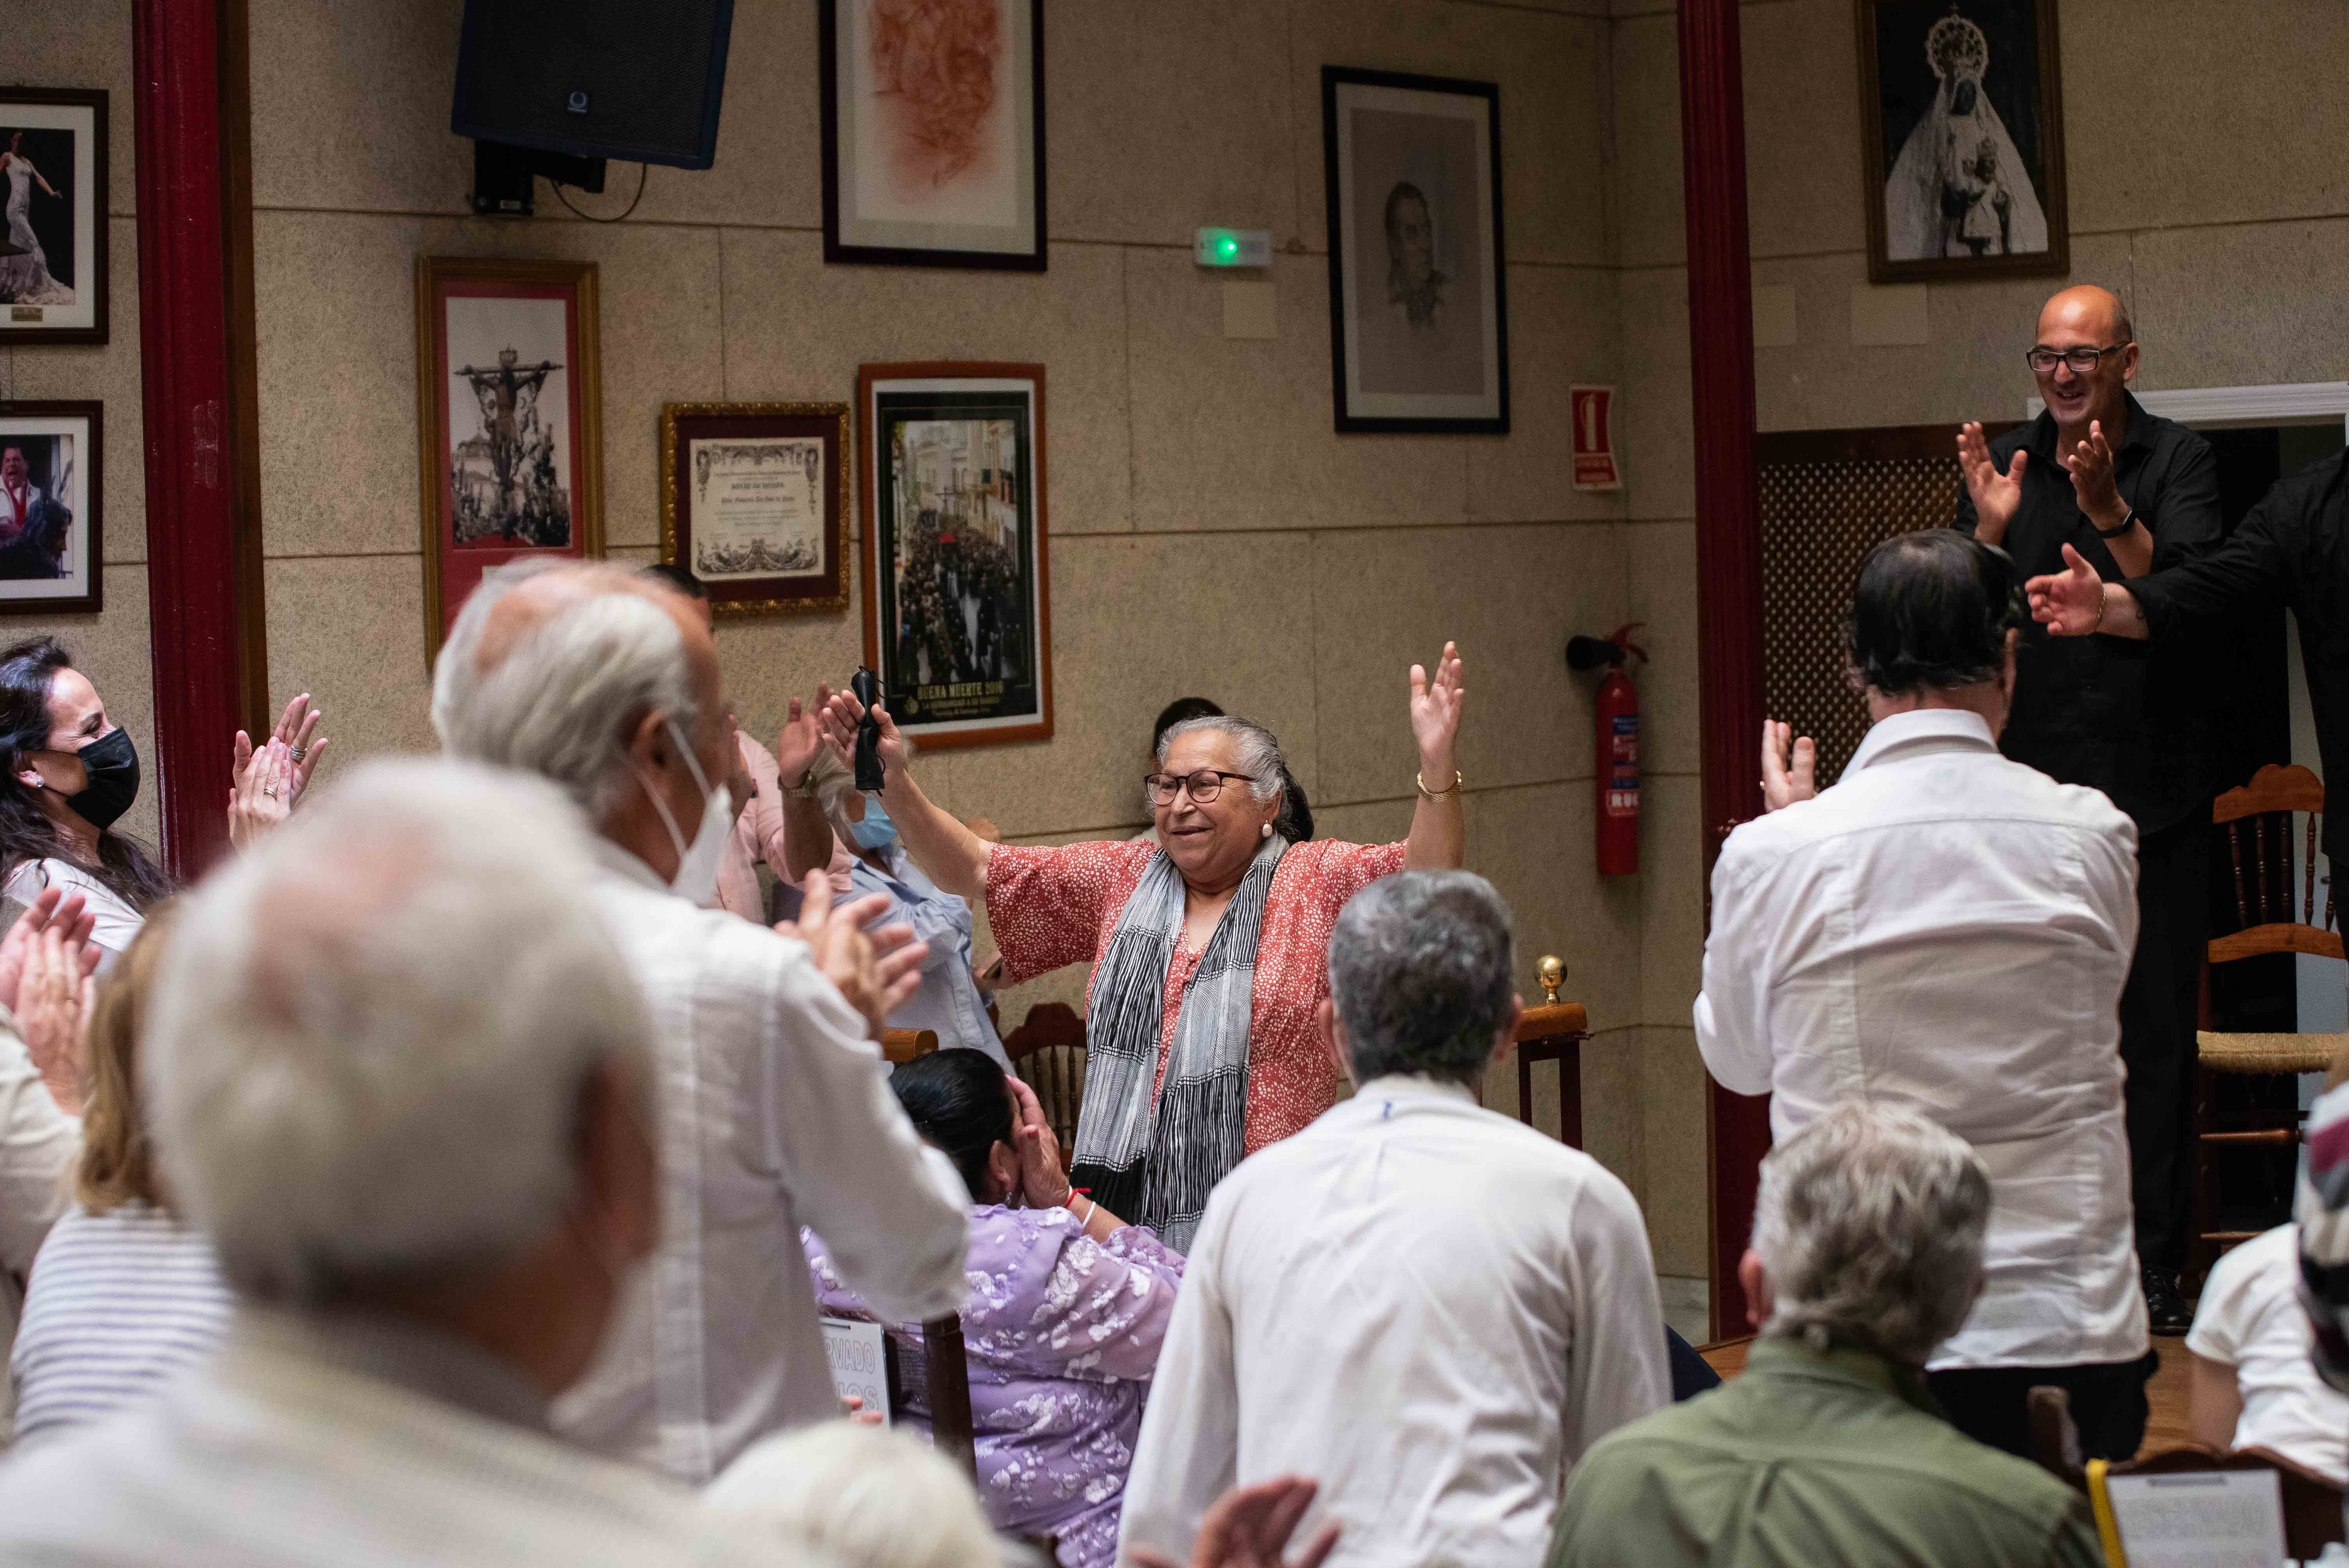 La Tía Curra durante el recital de Manuel Tañé en la Peña Tío José de Paula en Jerez, que presenta 'Un legado en el tiempo' con varias generaciones.